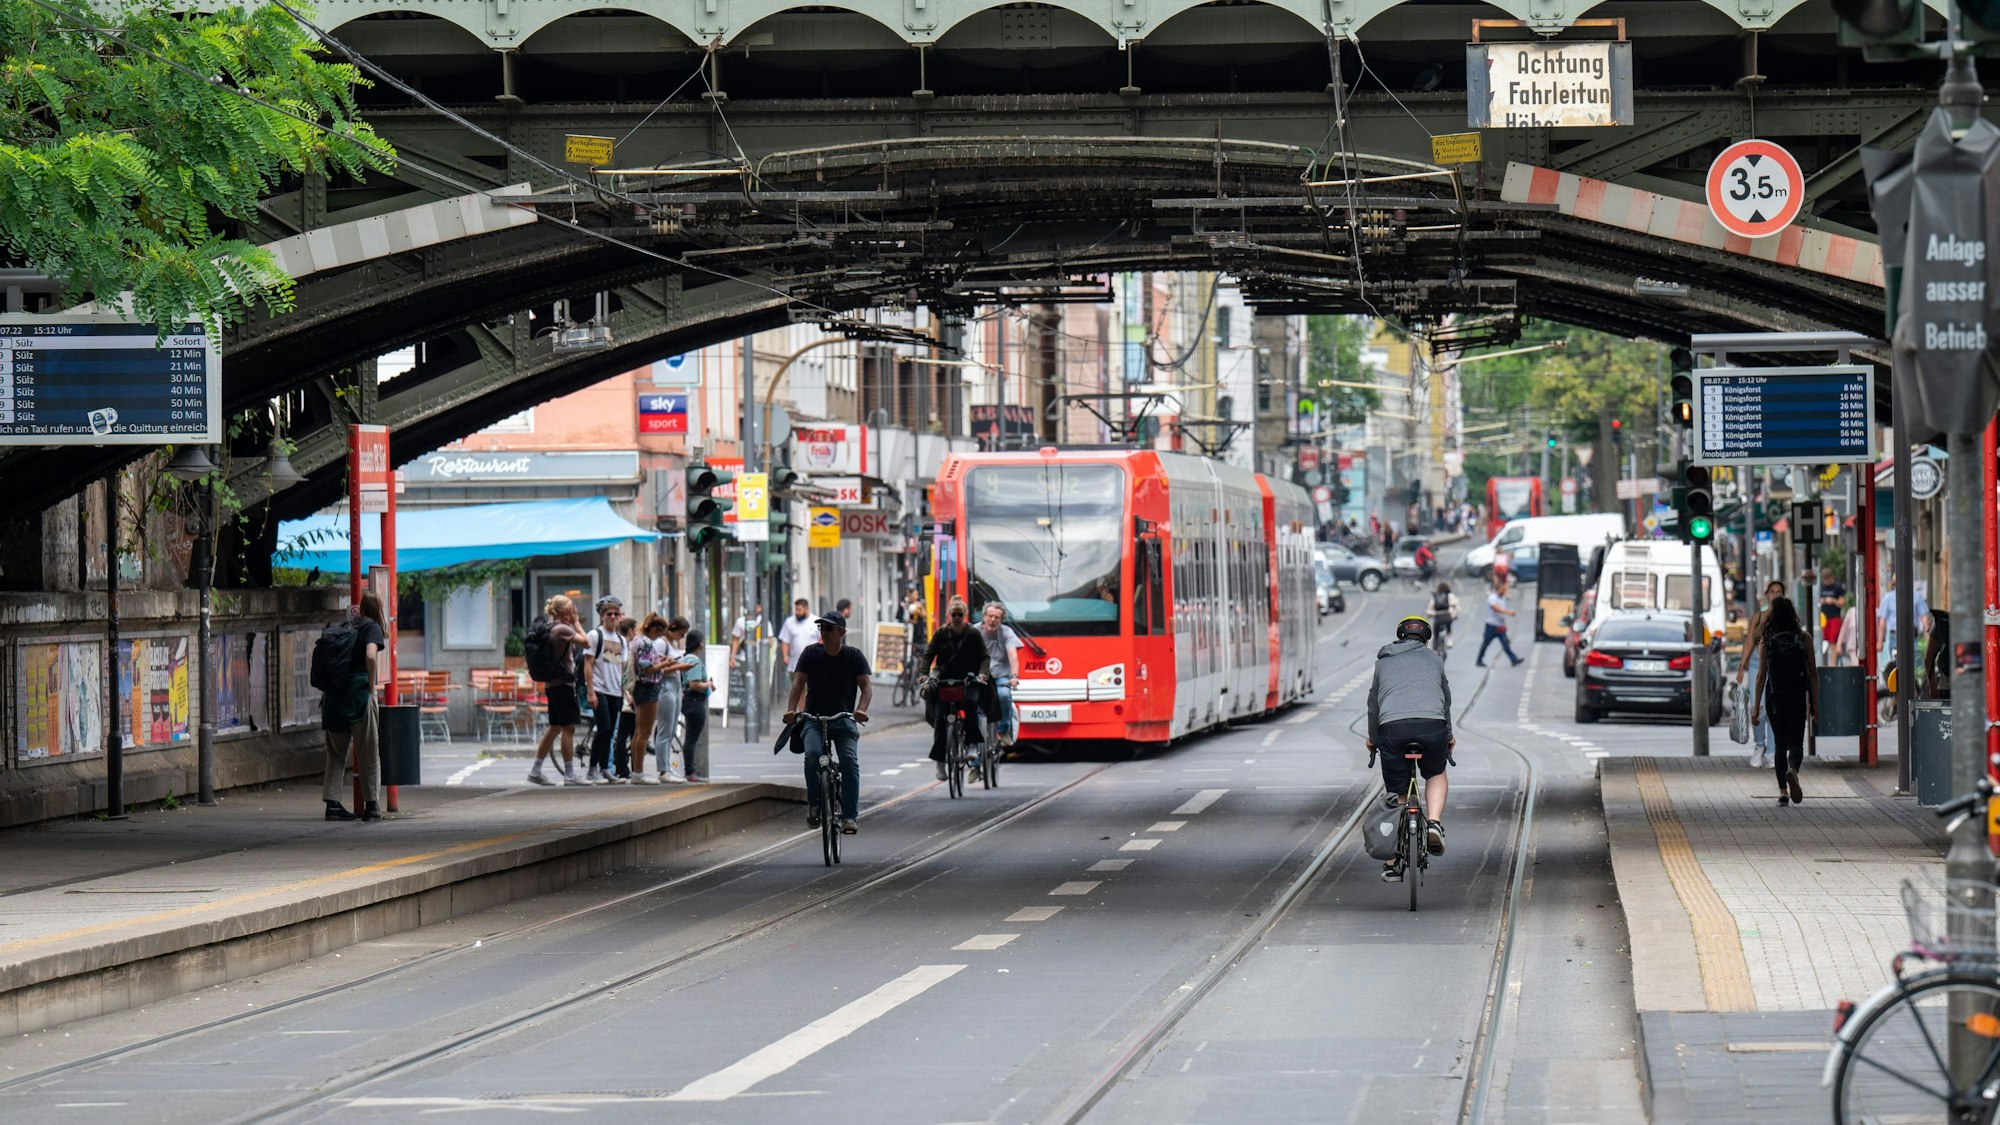 Fahrradfahrer in der Zülpicher Straße zwischen Mensa und Zülpicher Wall.